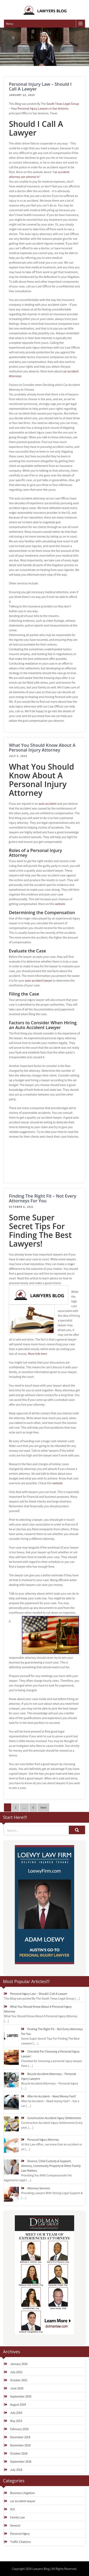 Gilder Law - Lafayette LA Lawyers